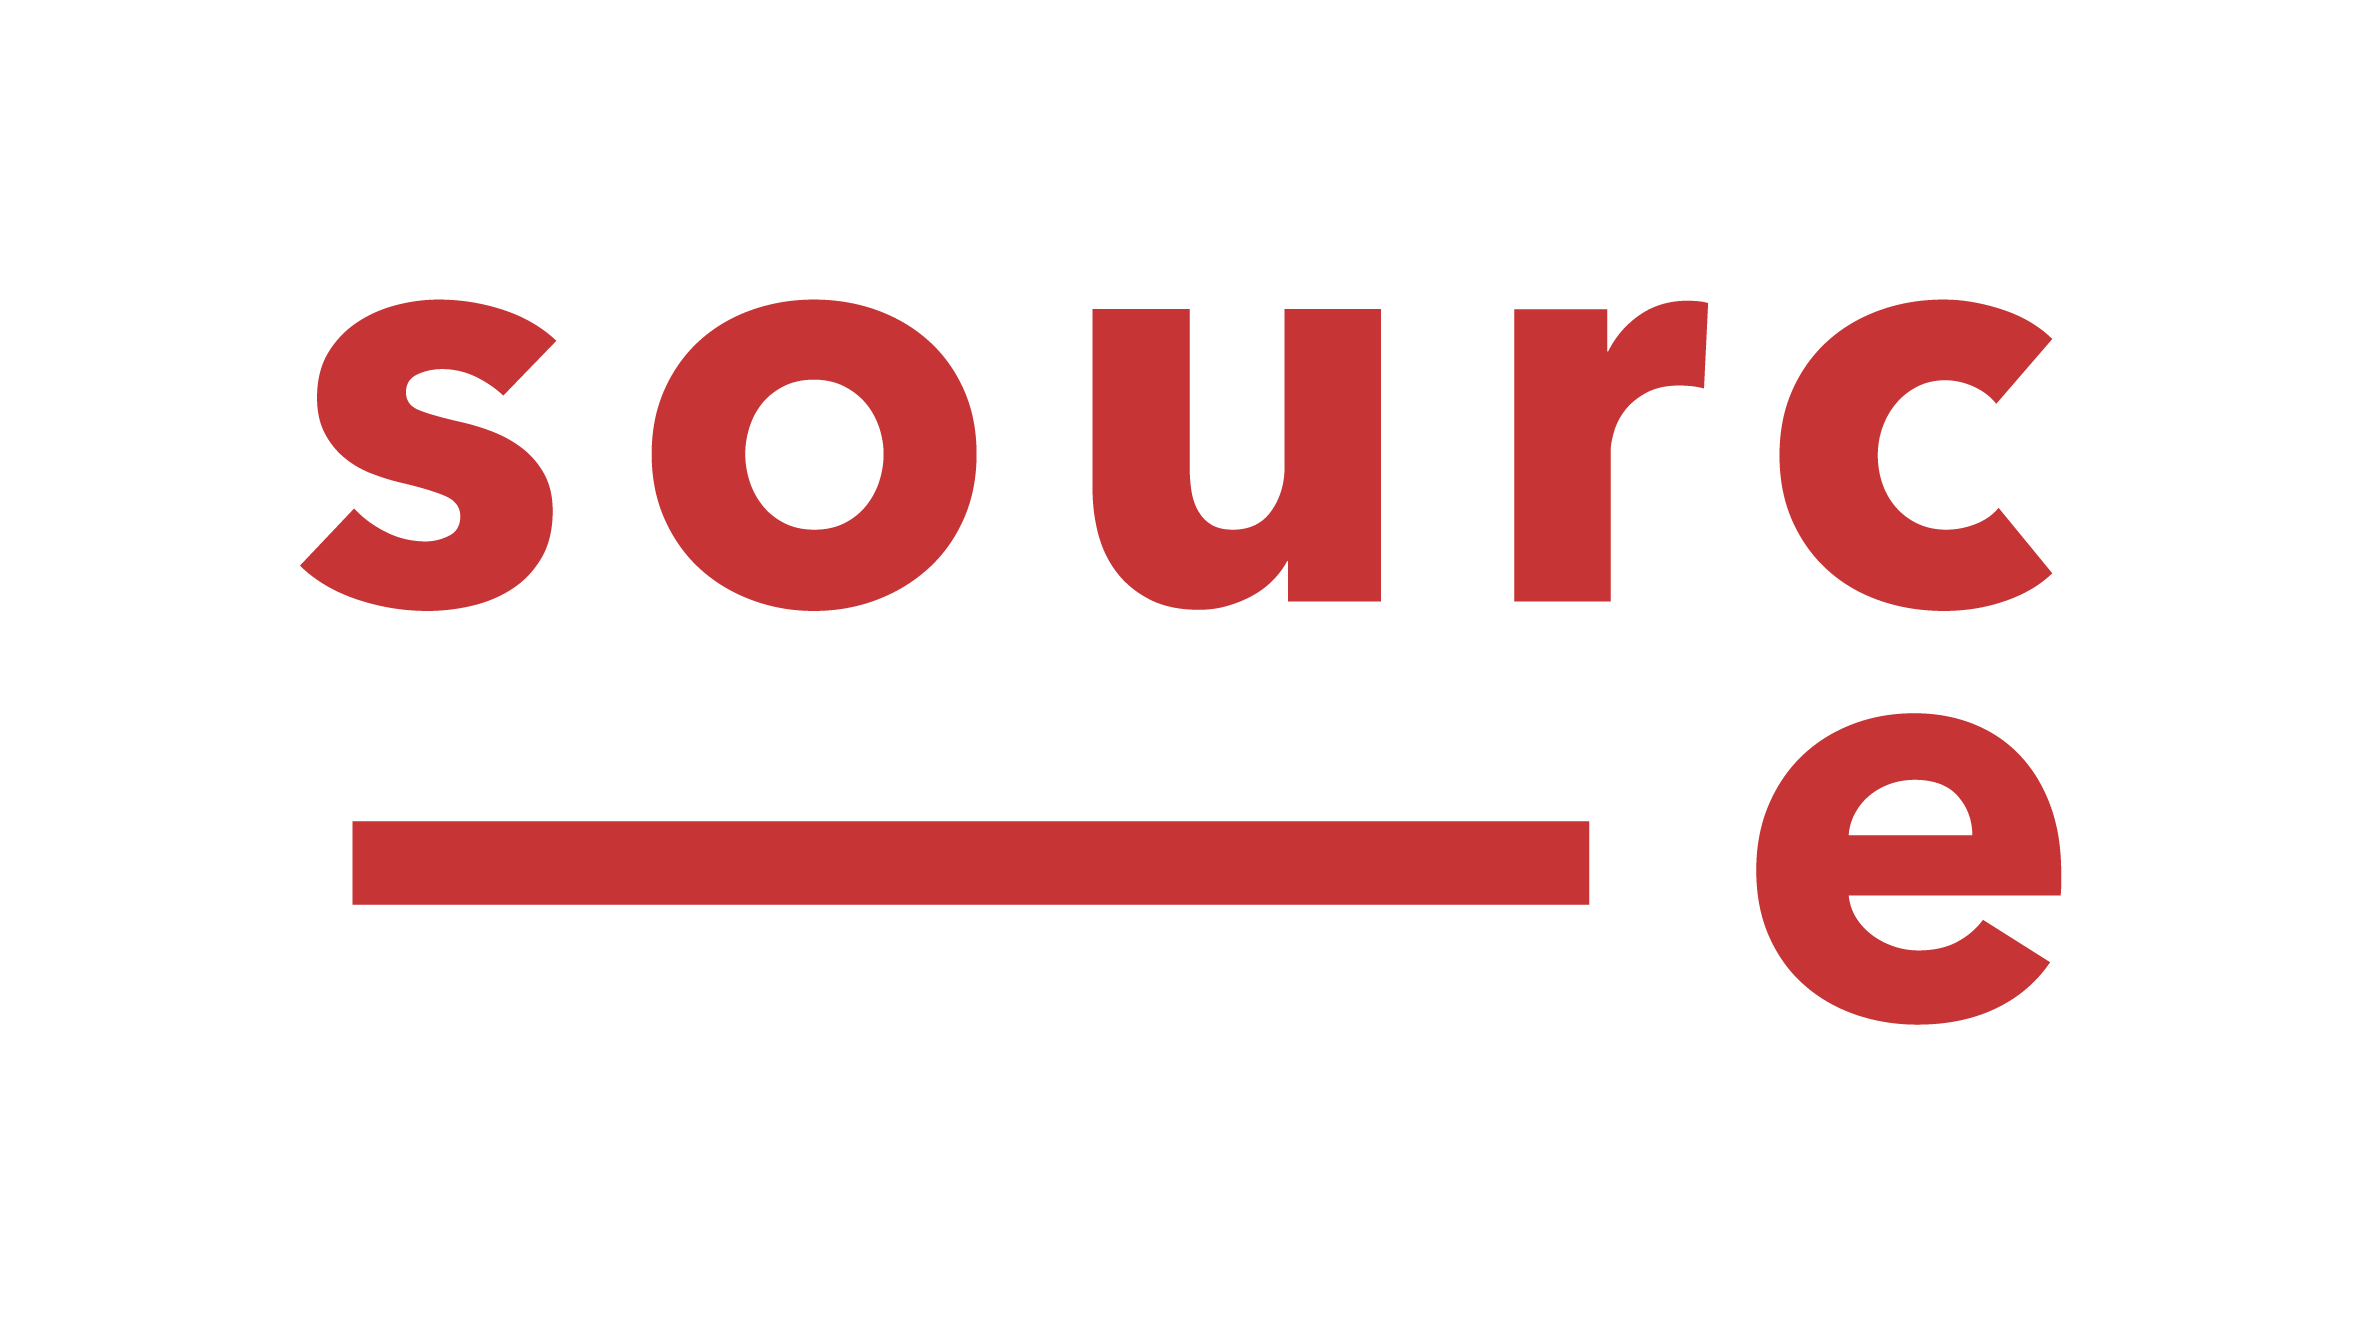 Company logo: